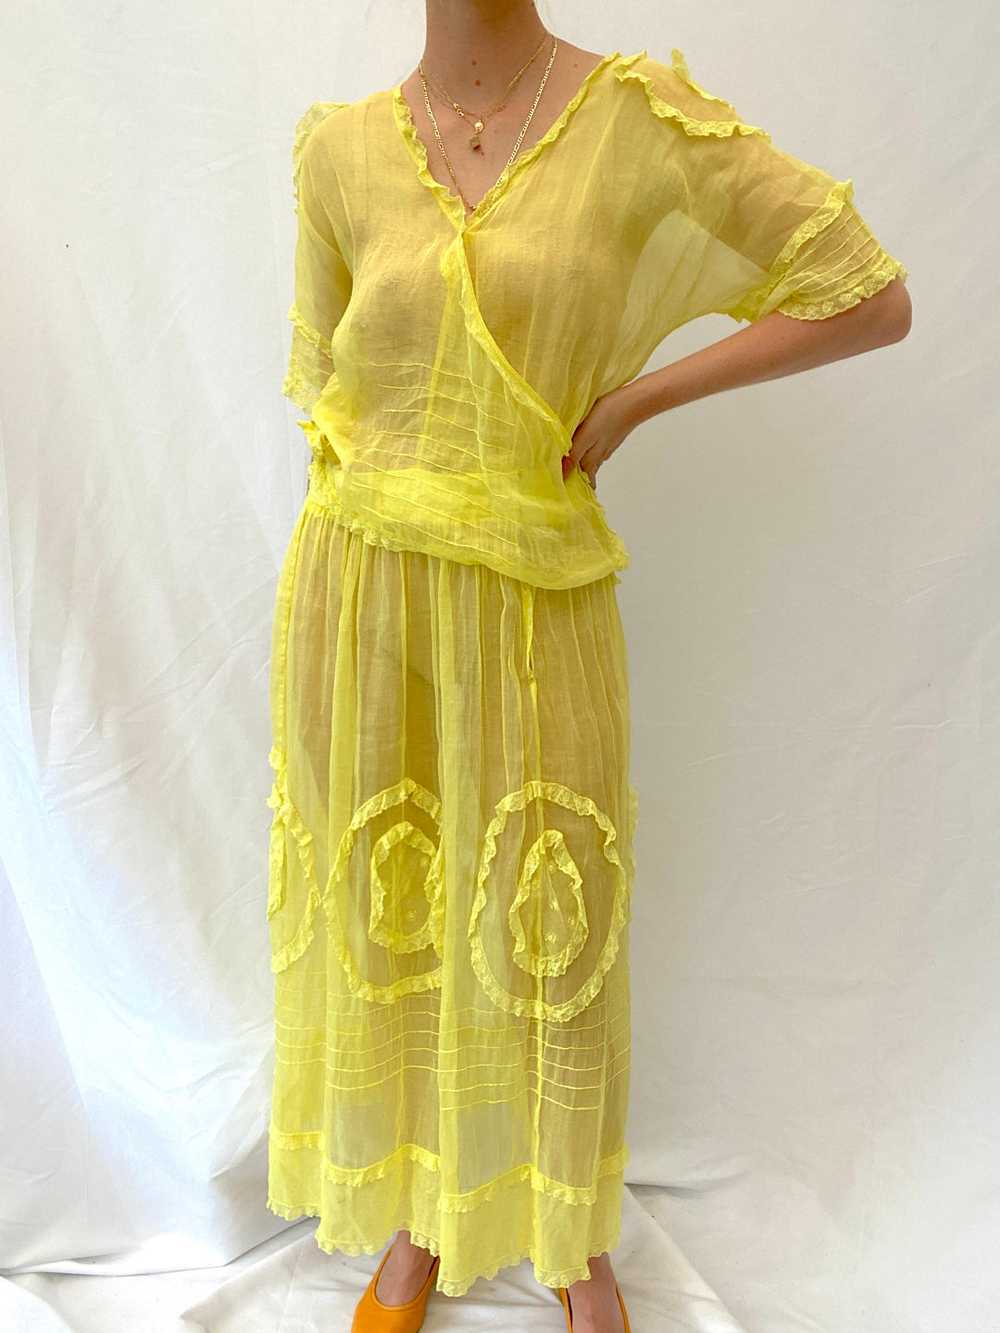 Hand Dyed Yellow Edwardian Organza Dress - image 3